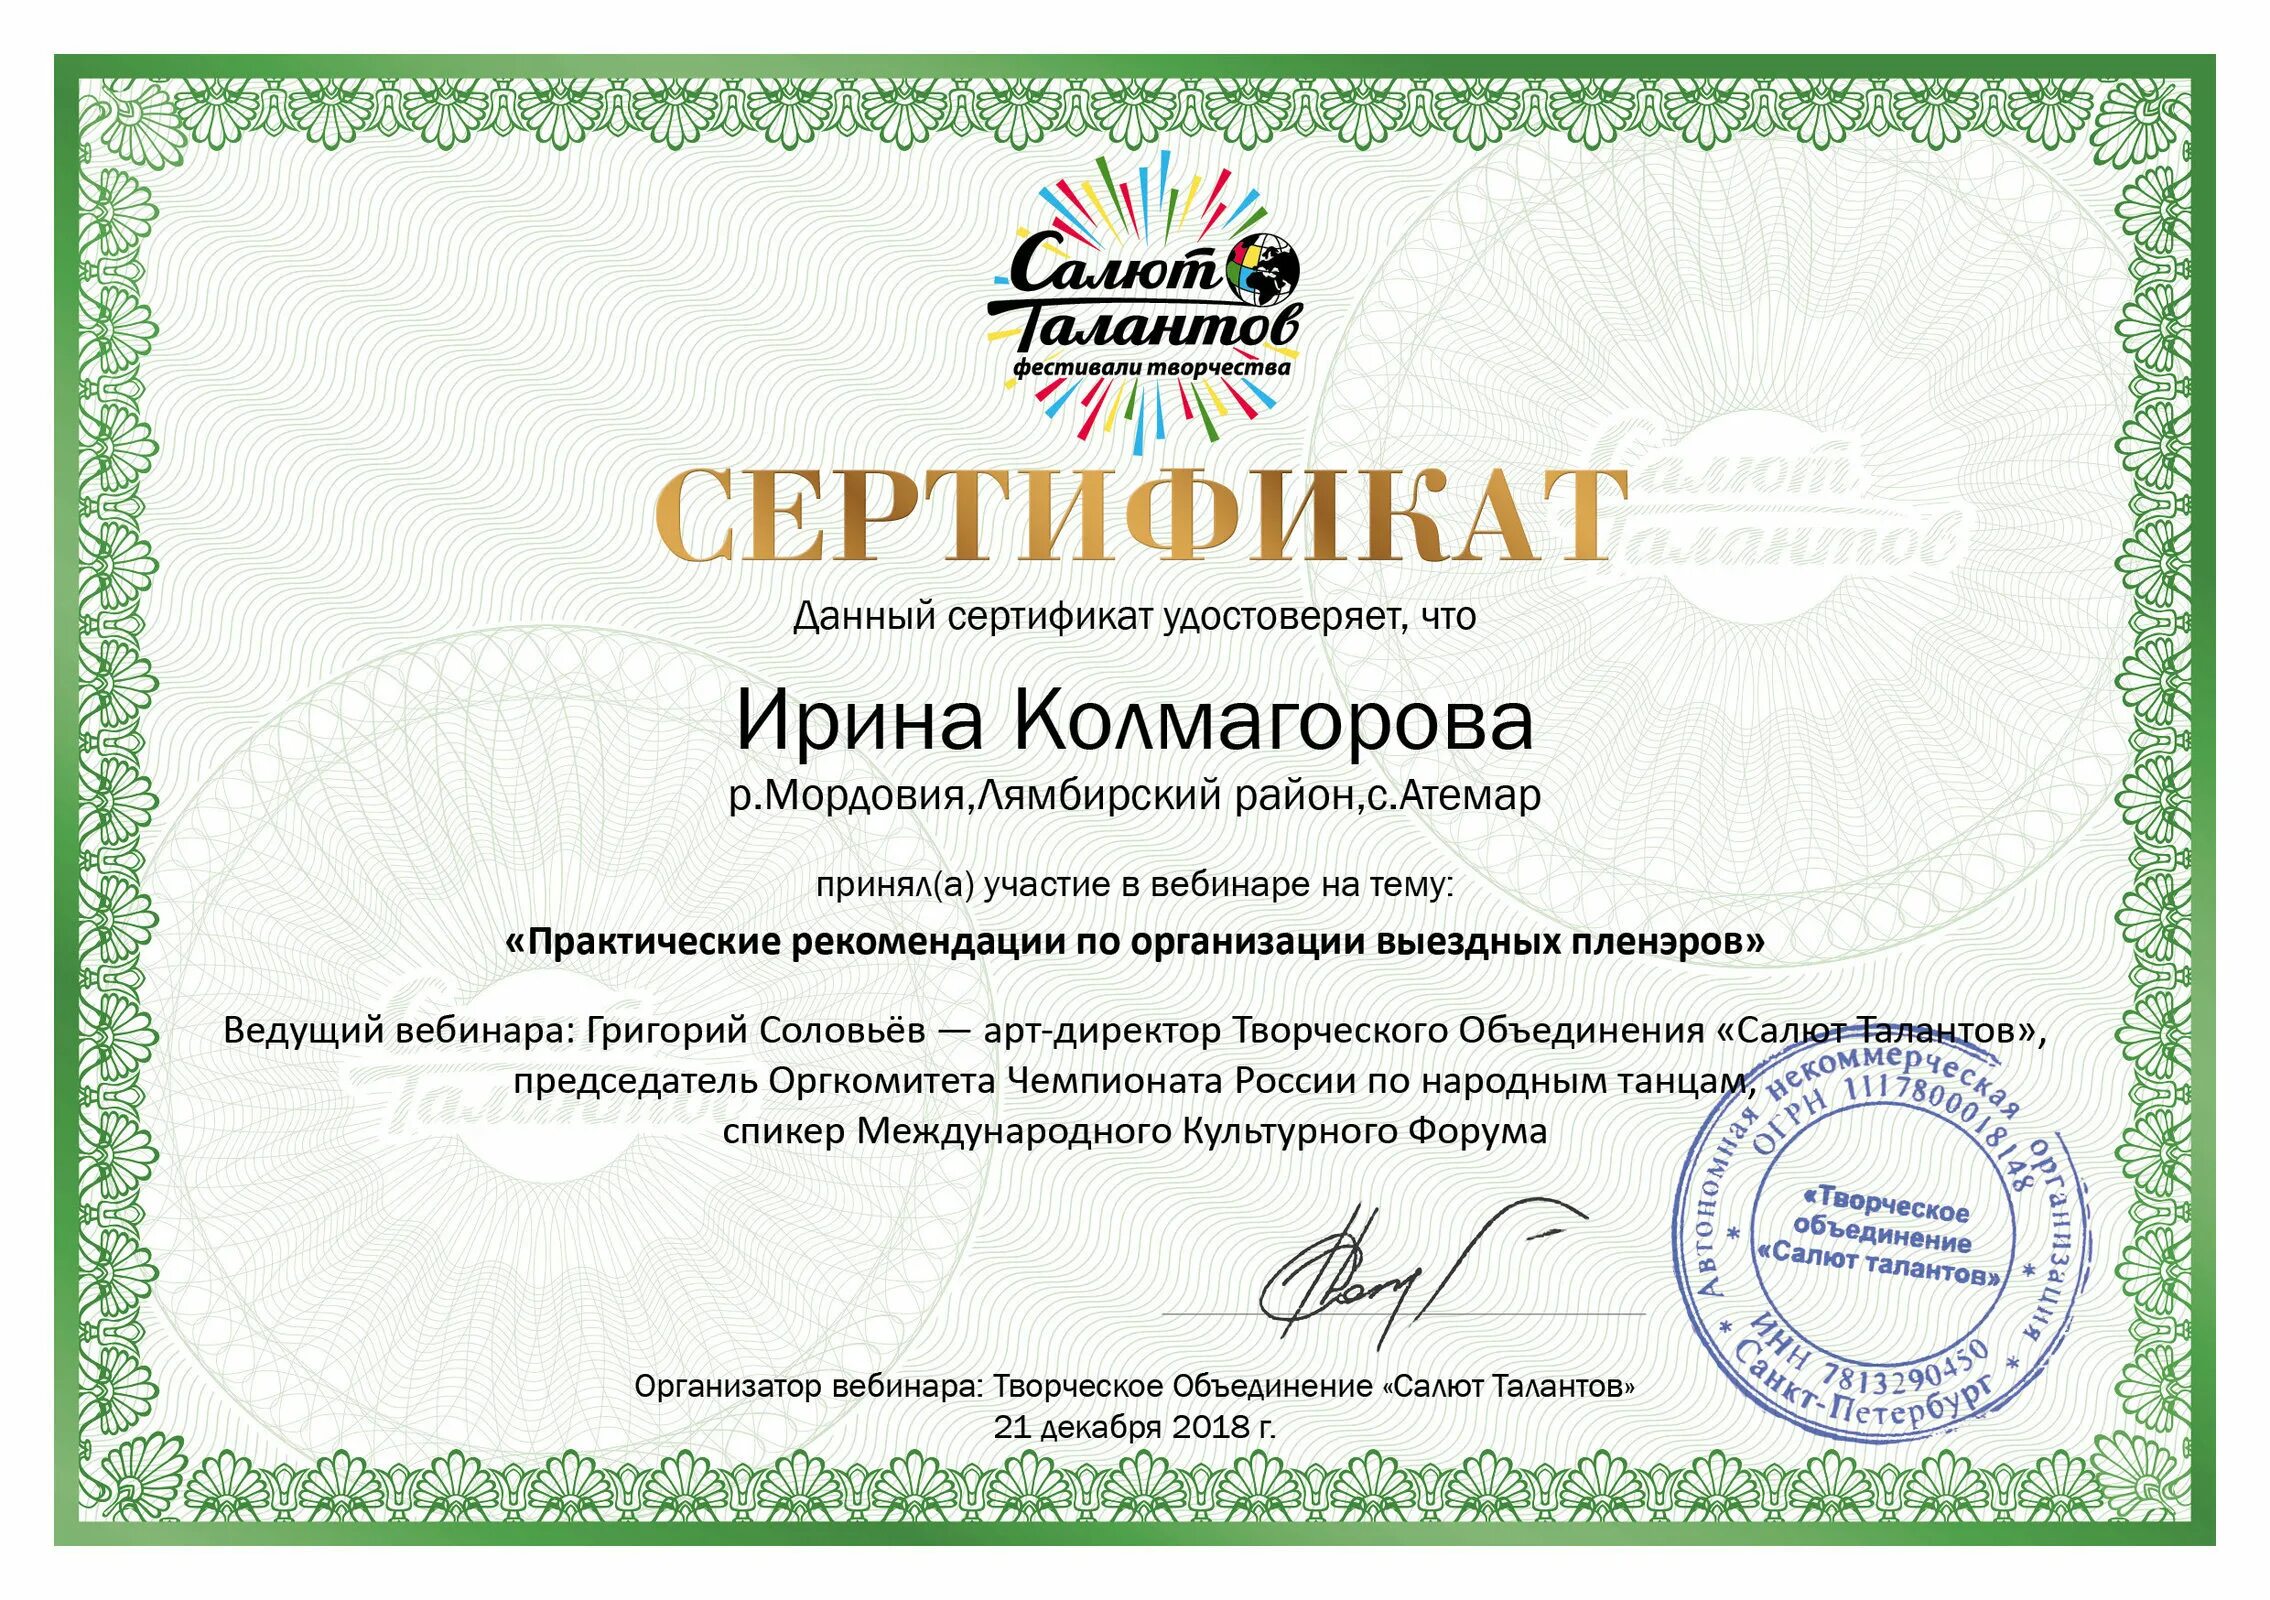 Сертификат удостоверяет что. Сертификат об участии в вебинаре. Сертификат об участии в мастер-классе. Сертификат подтверждает участие в конкурсе.